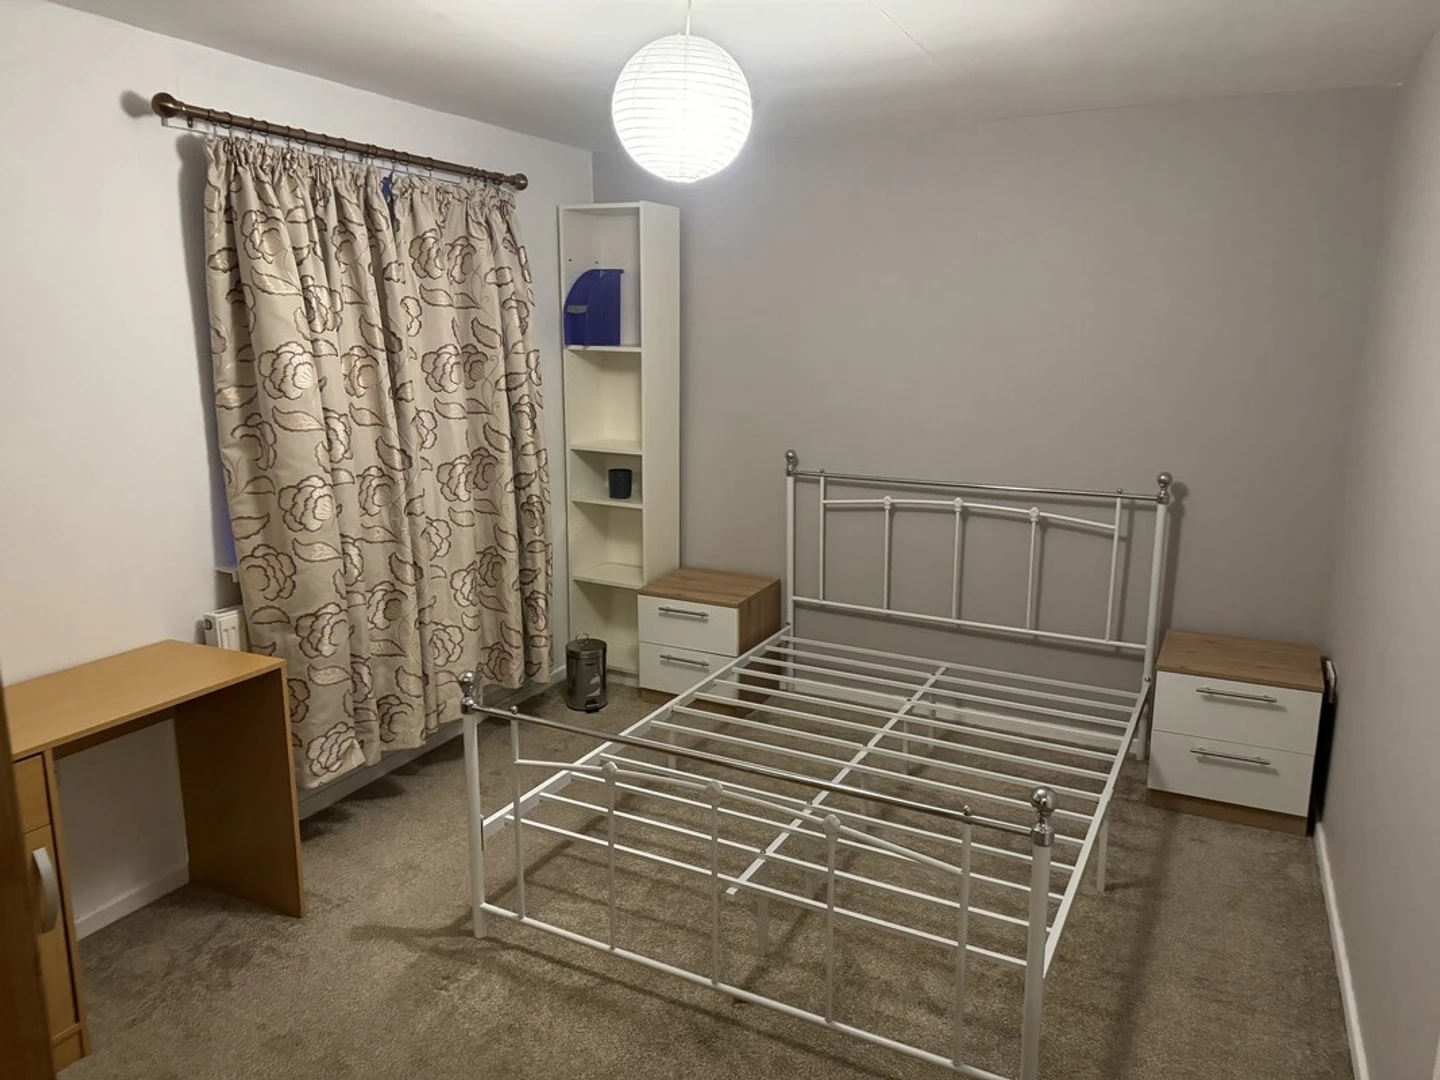 Pokój do wynajęcia z podwójnym łóżkiem w Leicester